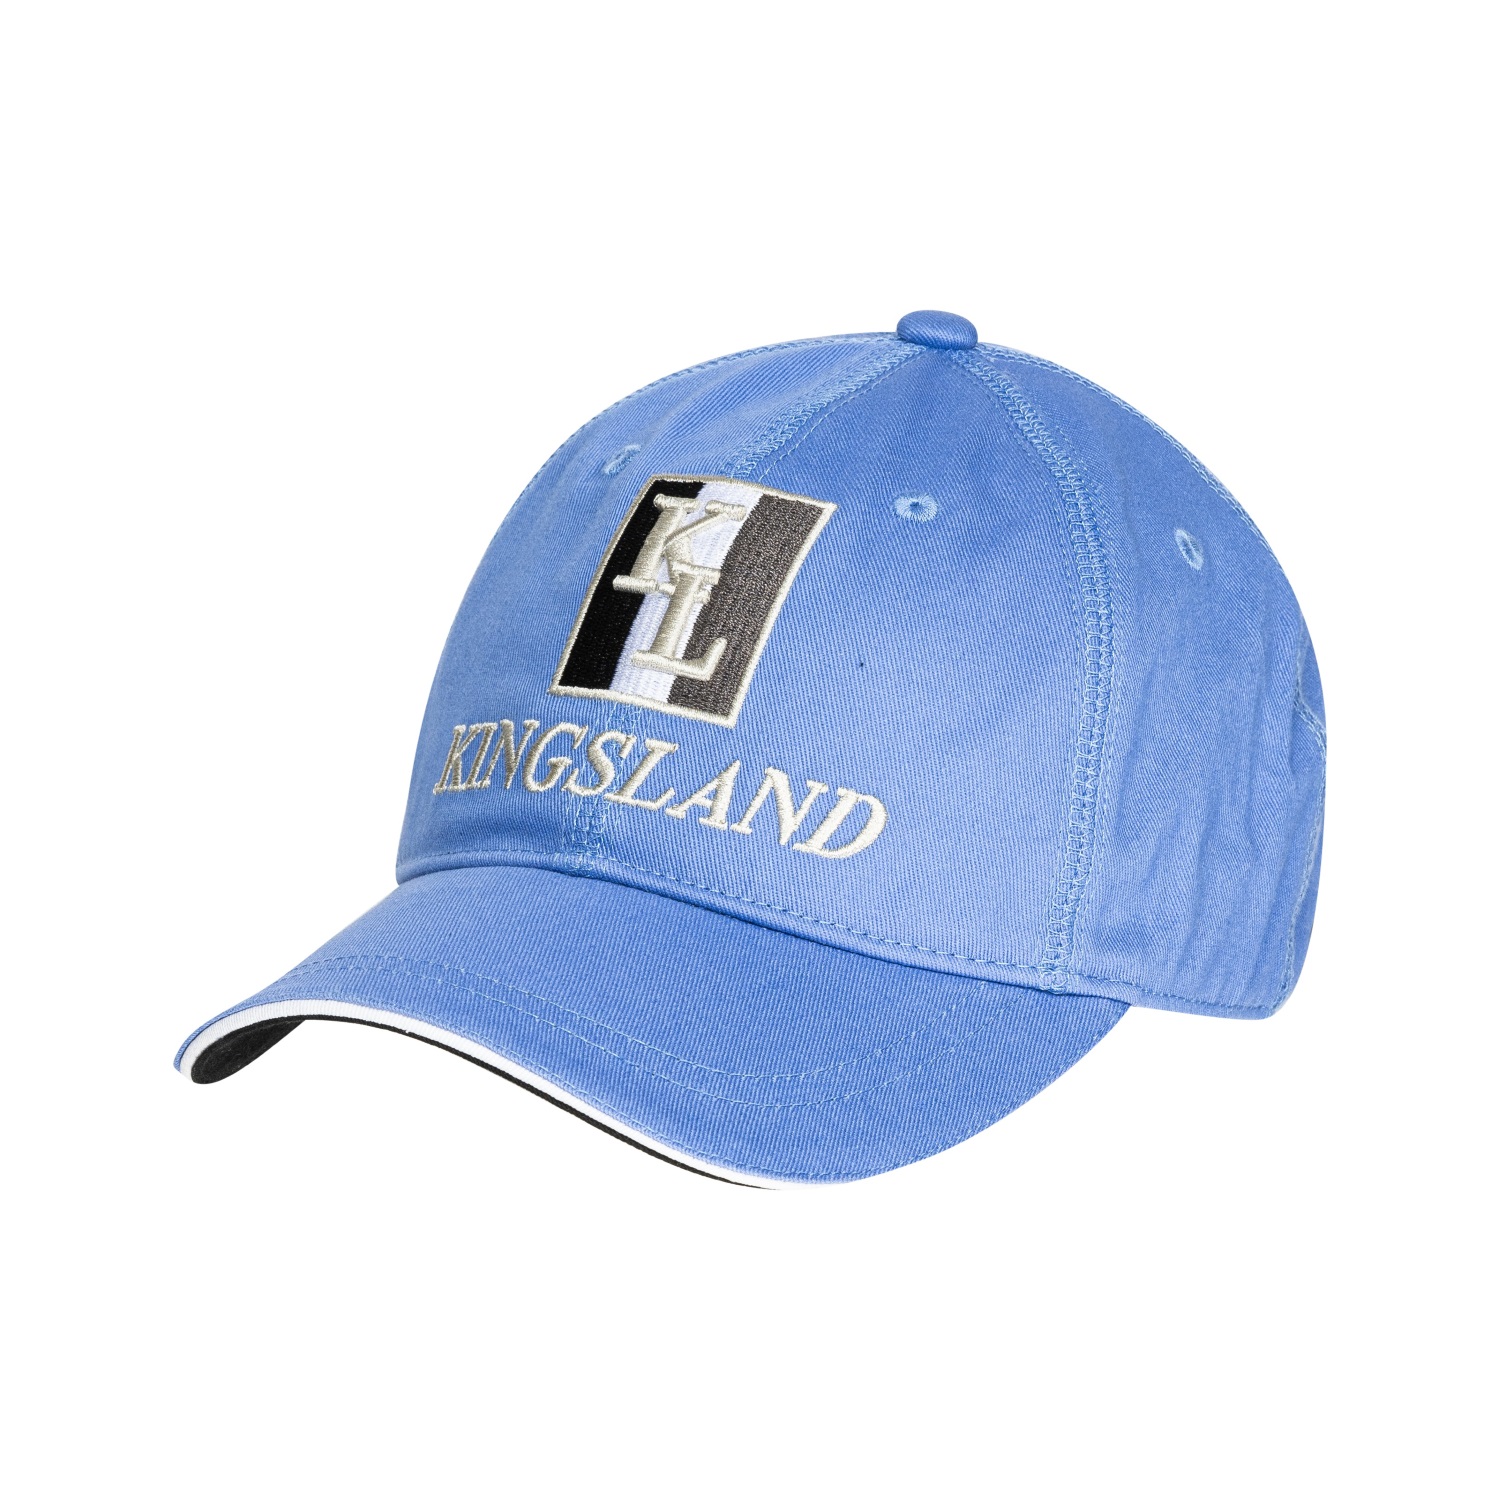 KINGSLAND Unisex Classic Limited Cap, Basecap - grey - onesize - 1